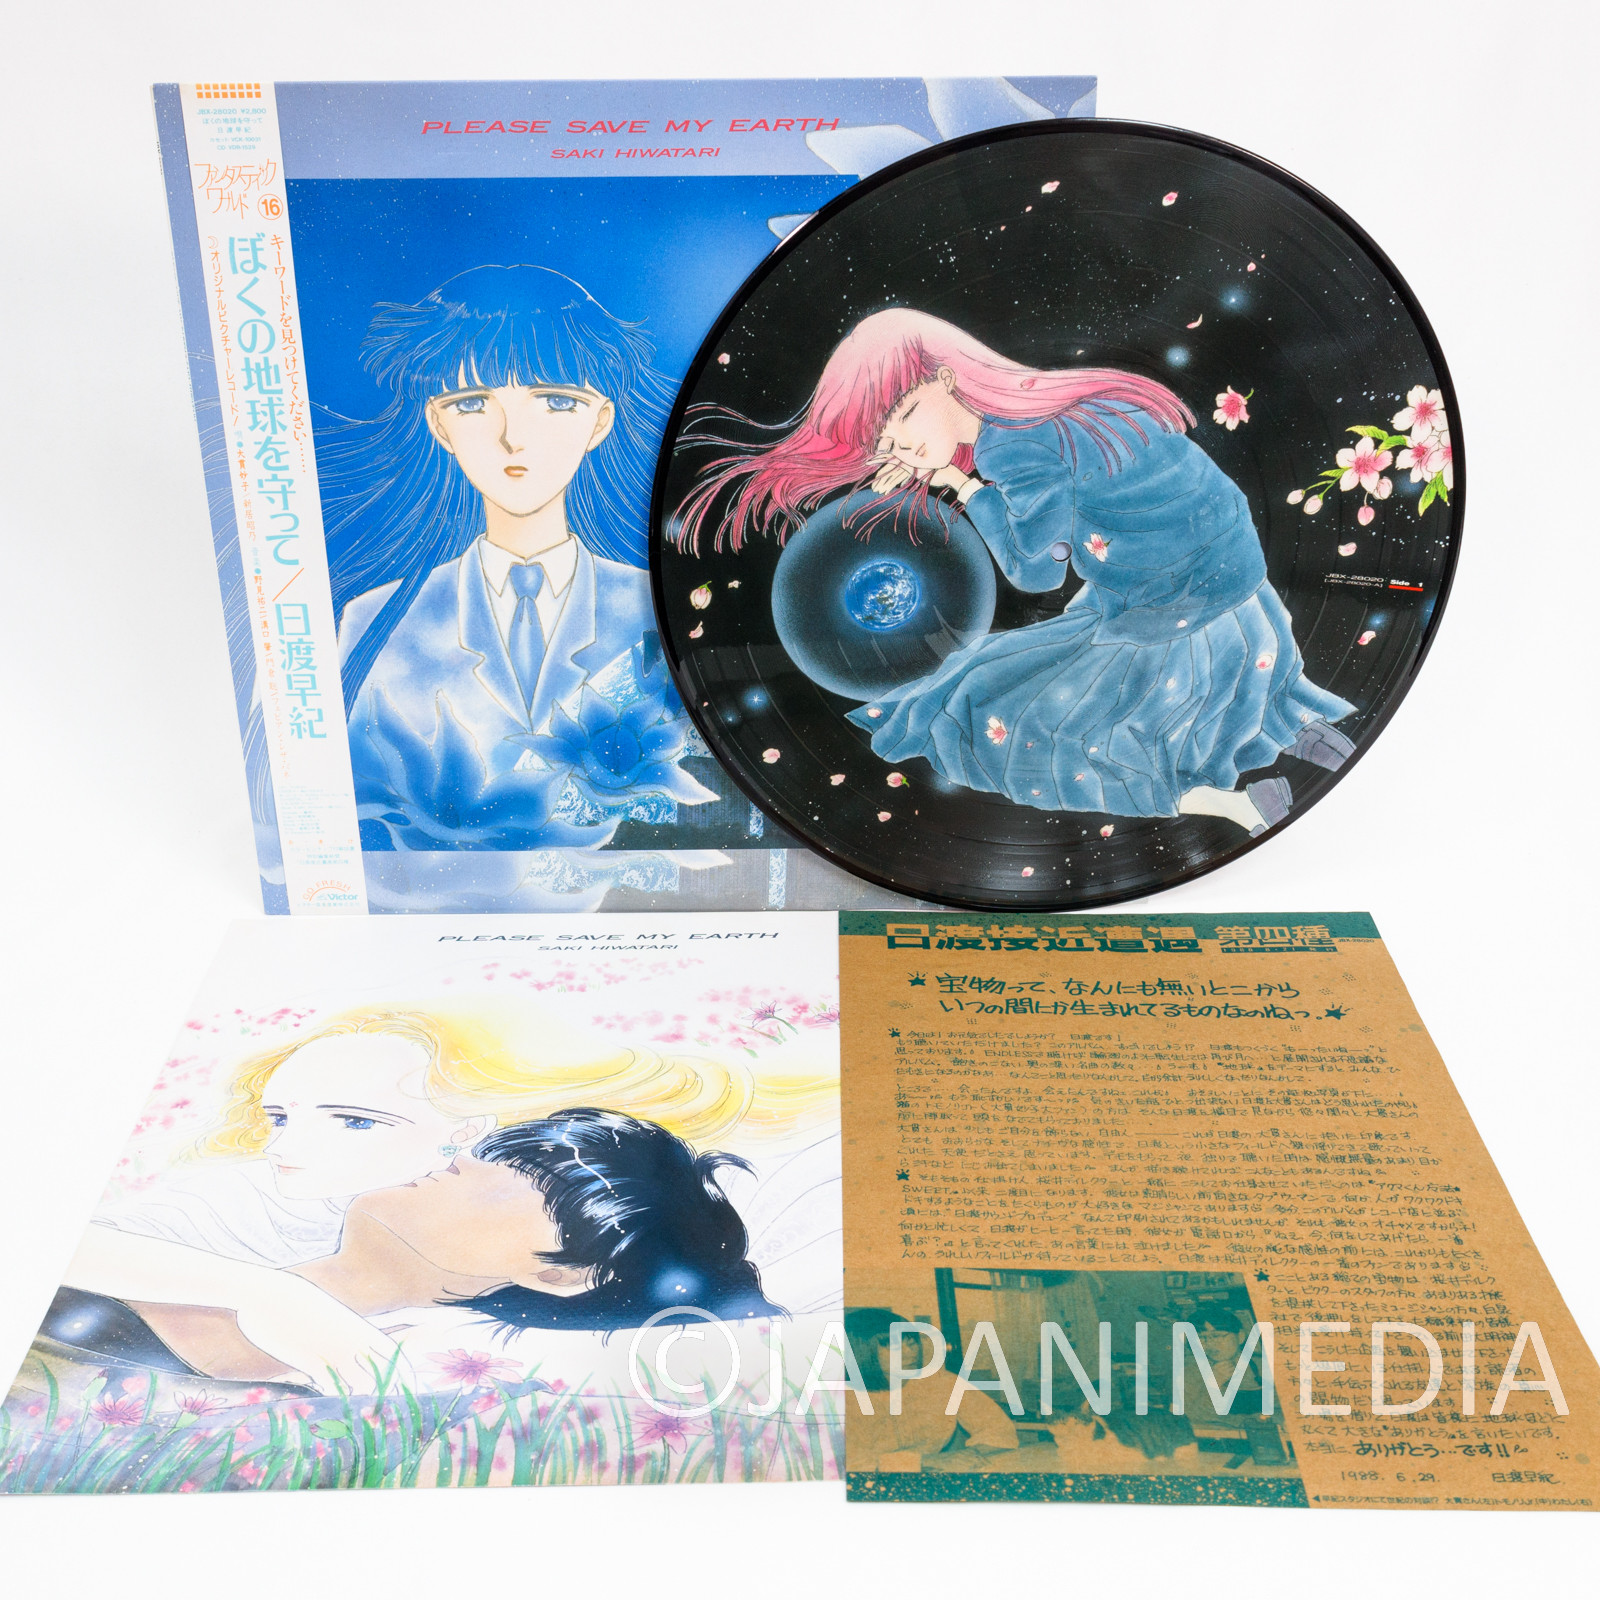 Please Save My Earth Soundtrack Picture Disc 12" LP Vinyl Record JBX-28020